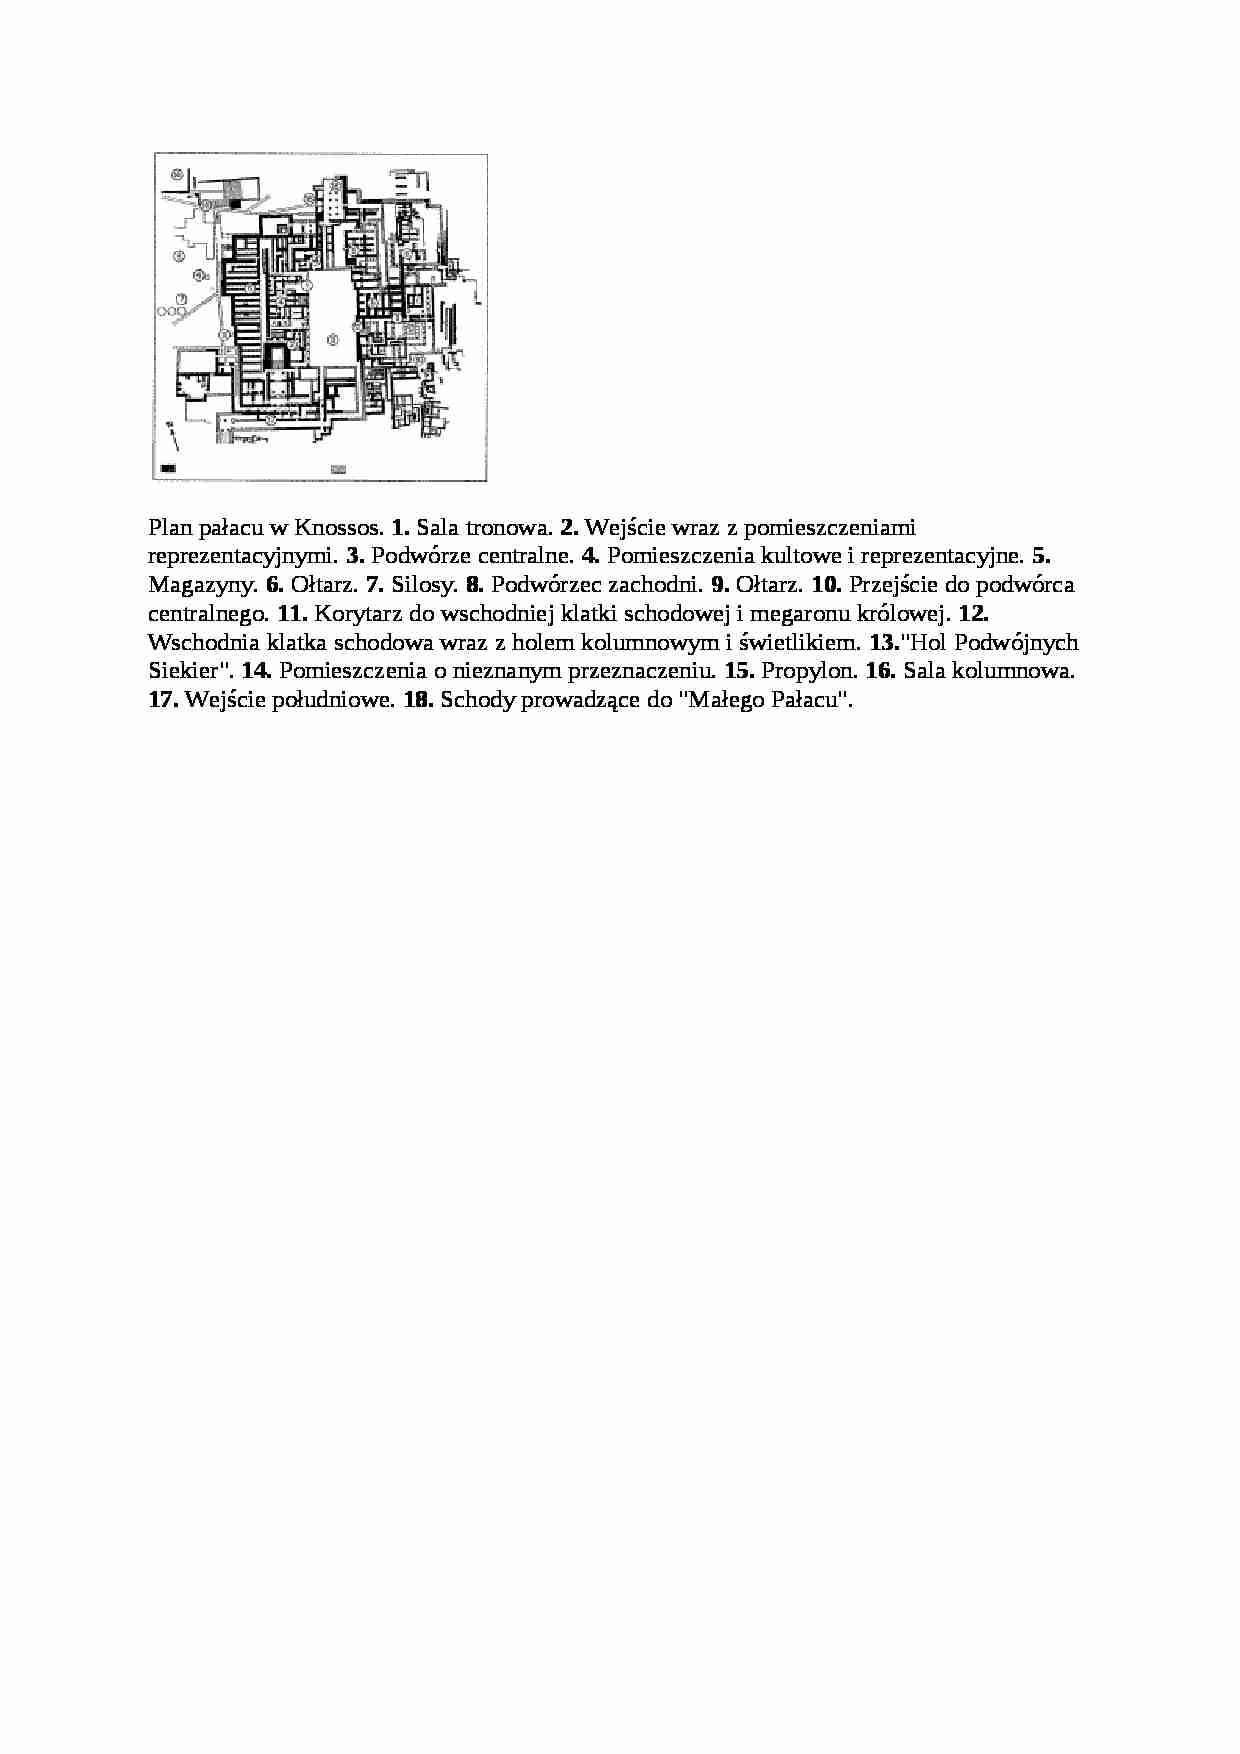 Plan pałacu w Knossos - strona 1